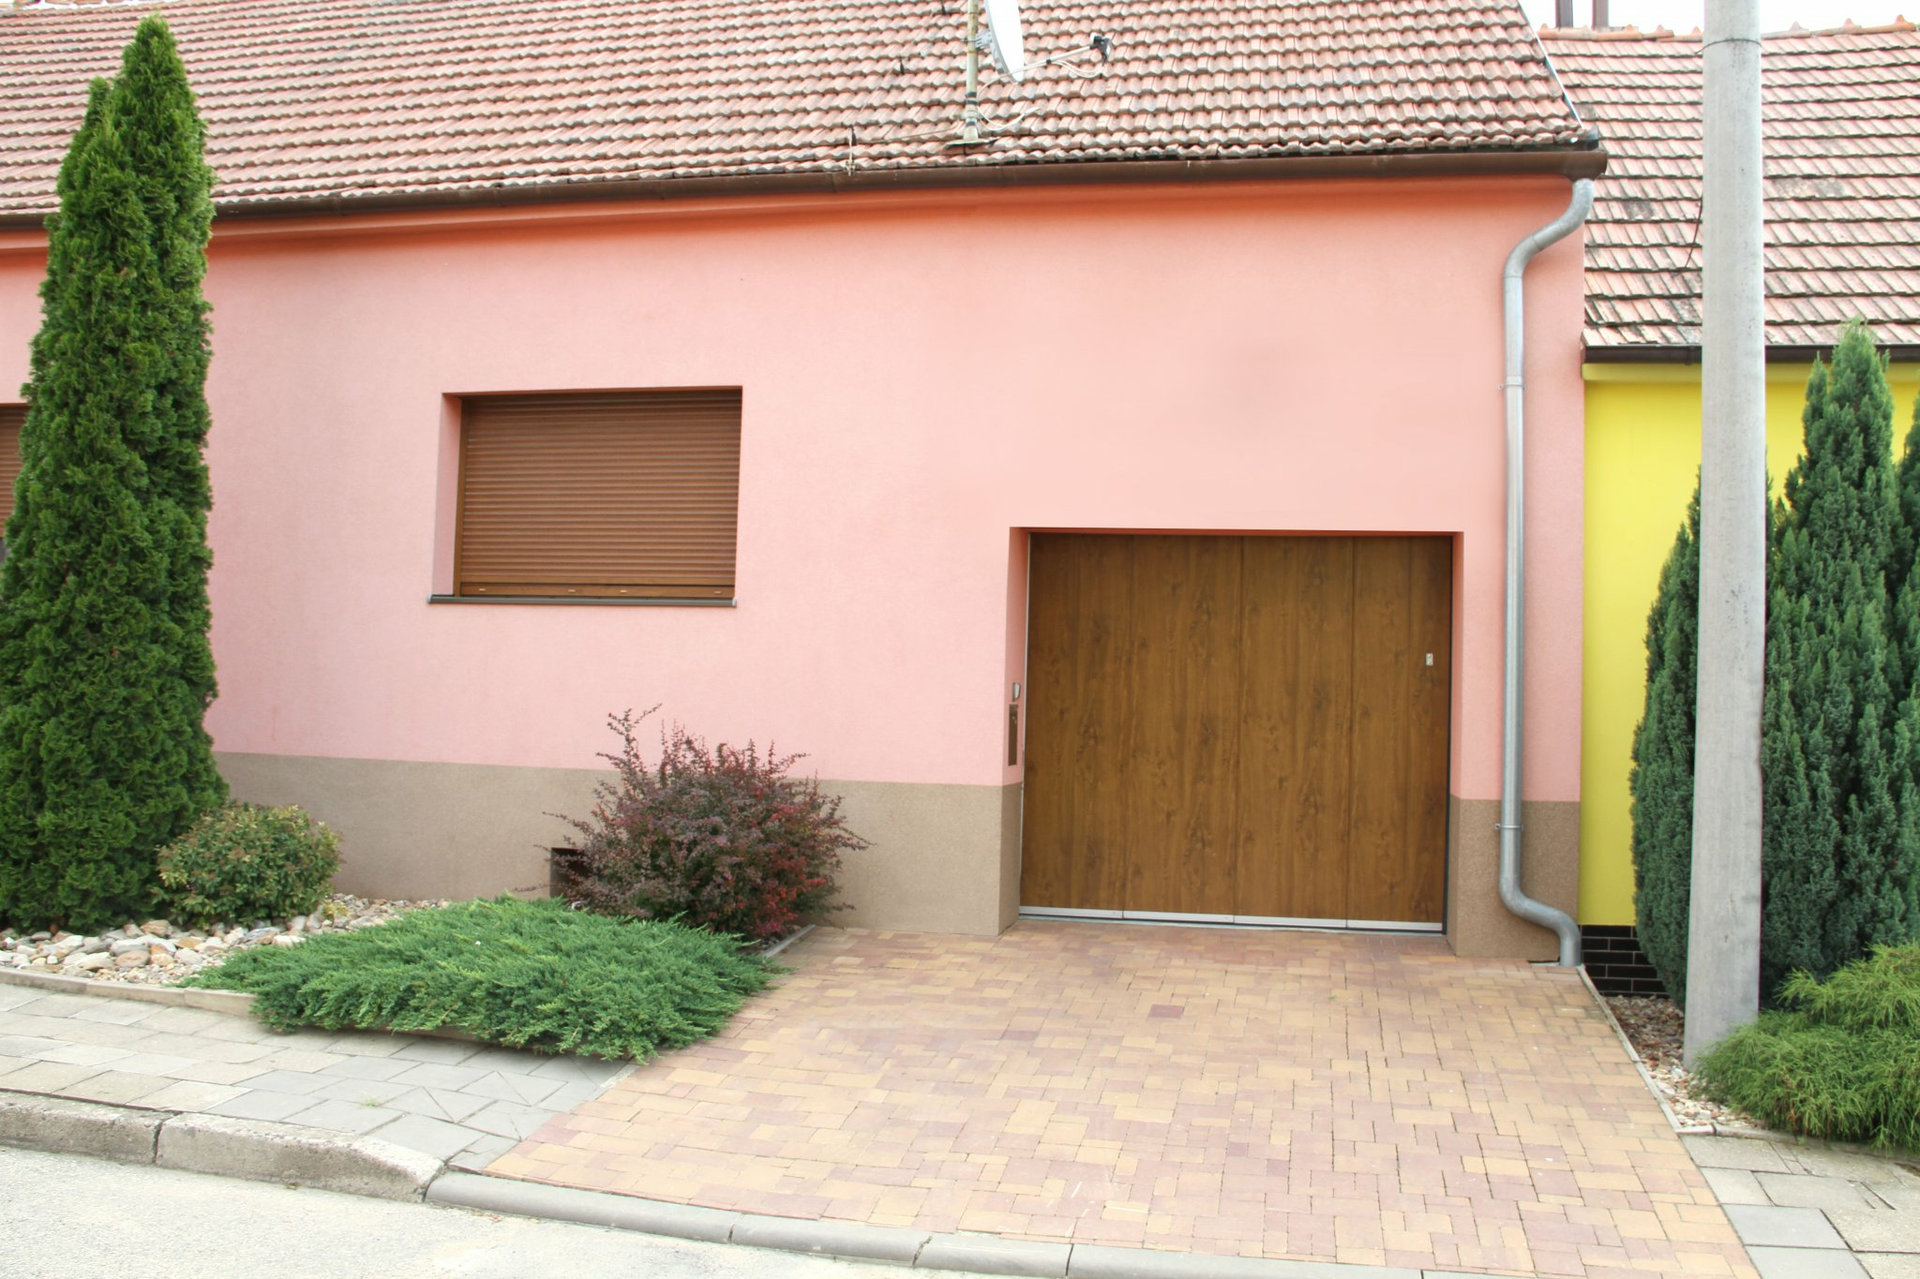 Garážová vrata LOMAX zvyšují bezpečnost domu.